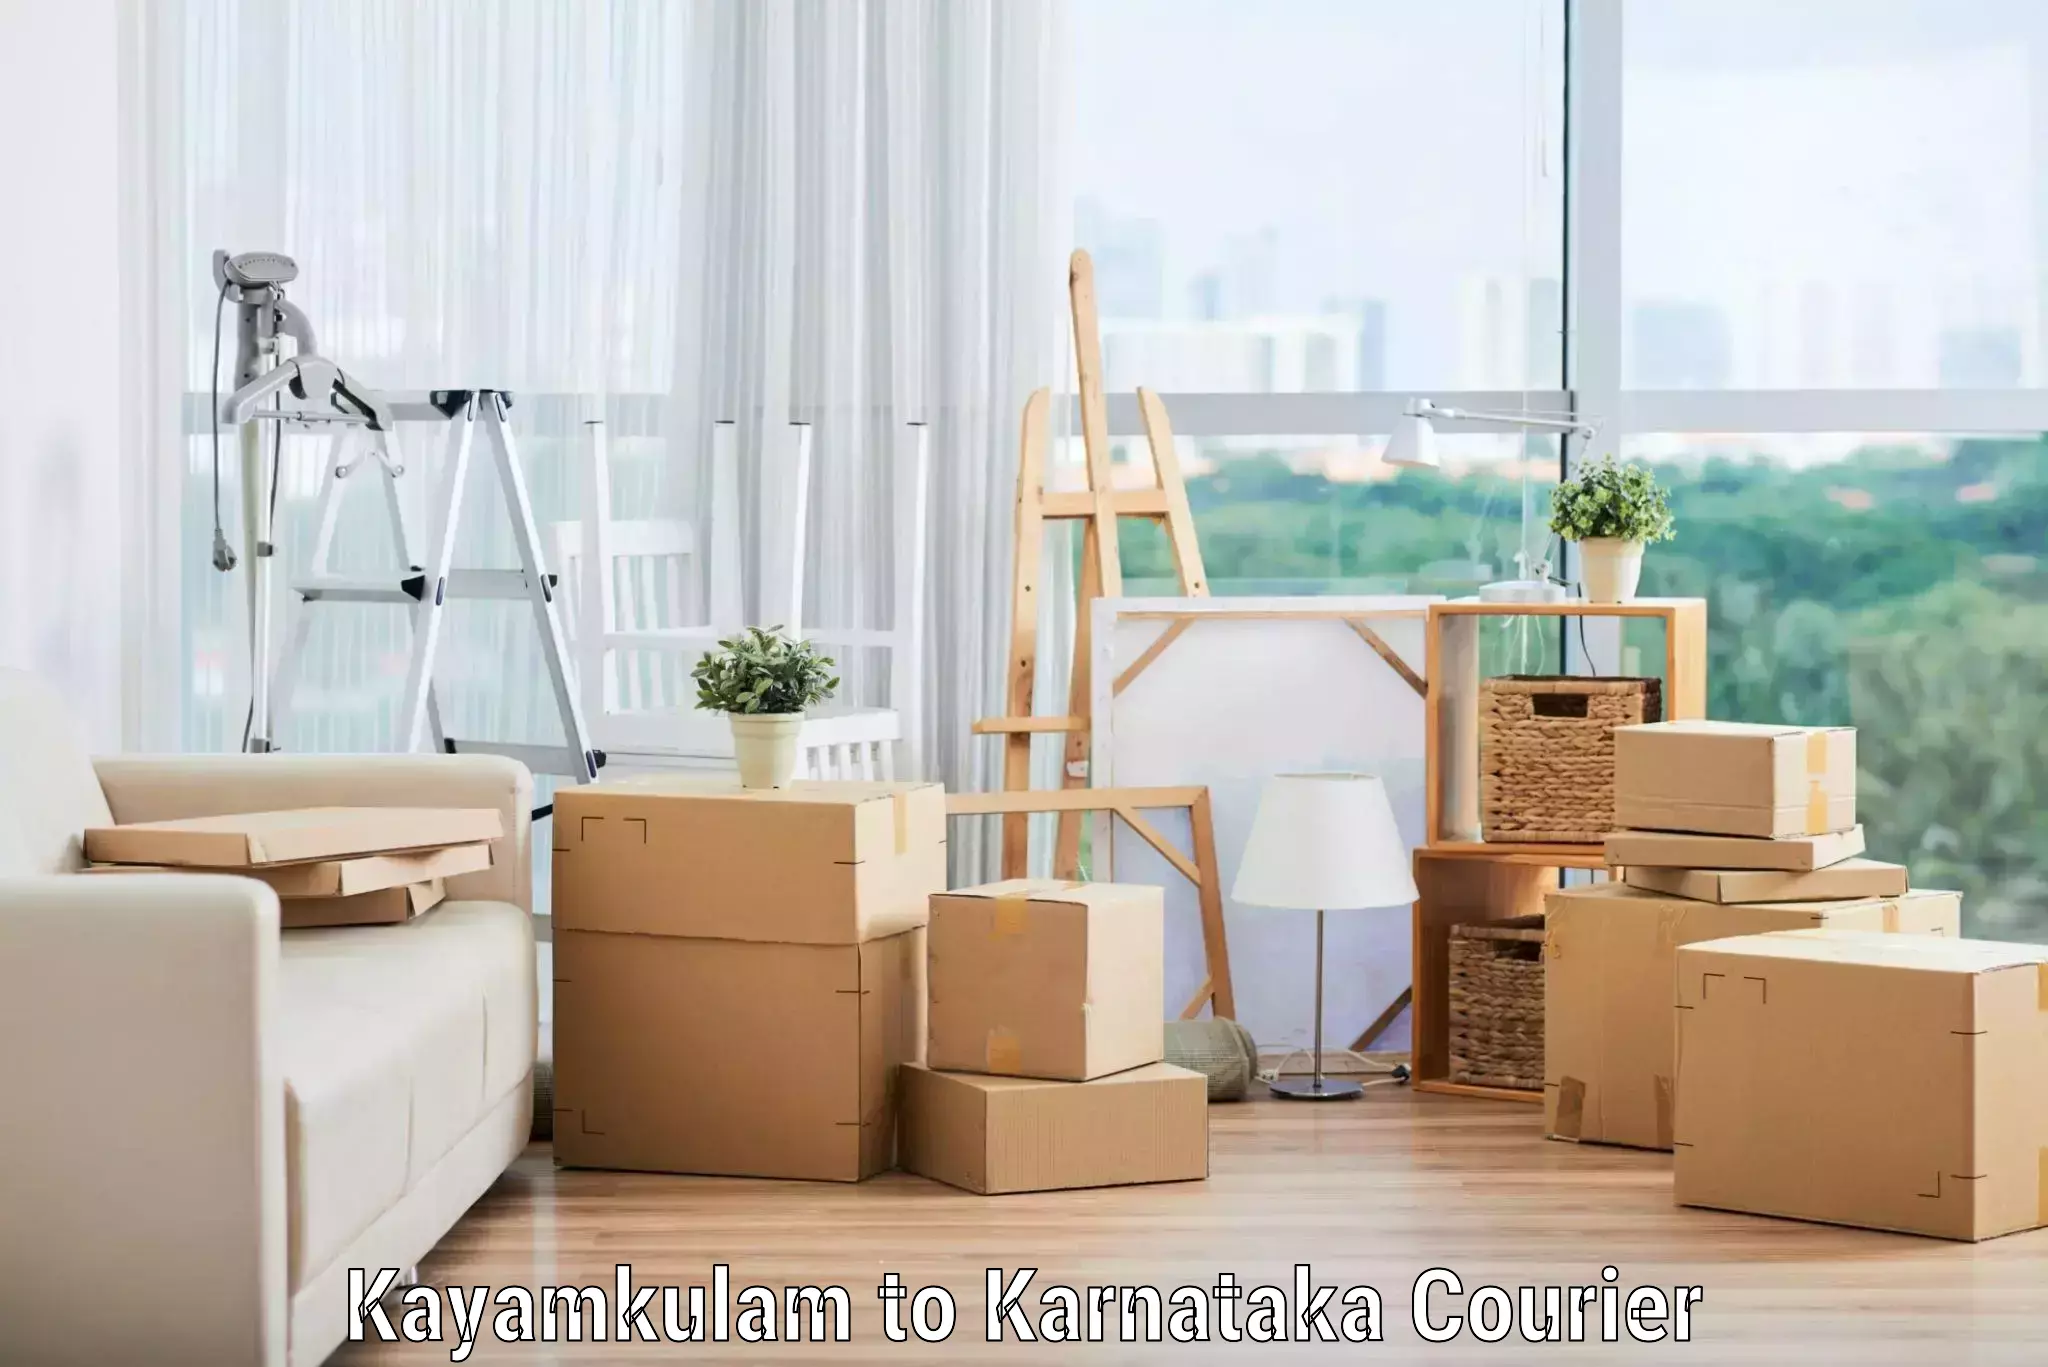 Professional home shifting Kayamkulam to Karnataka